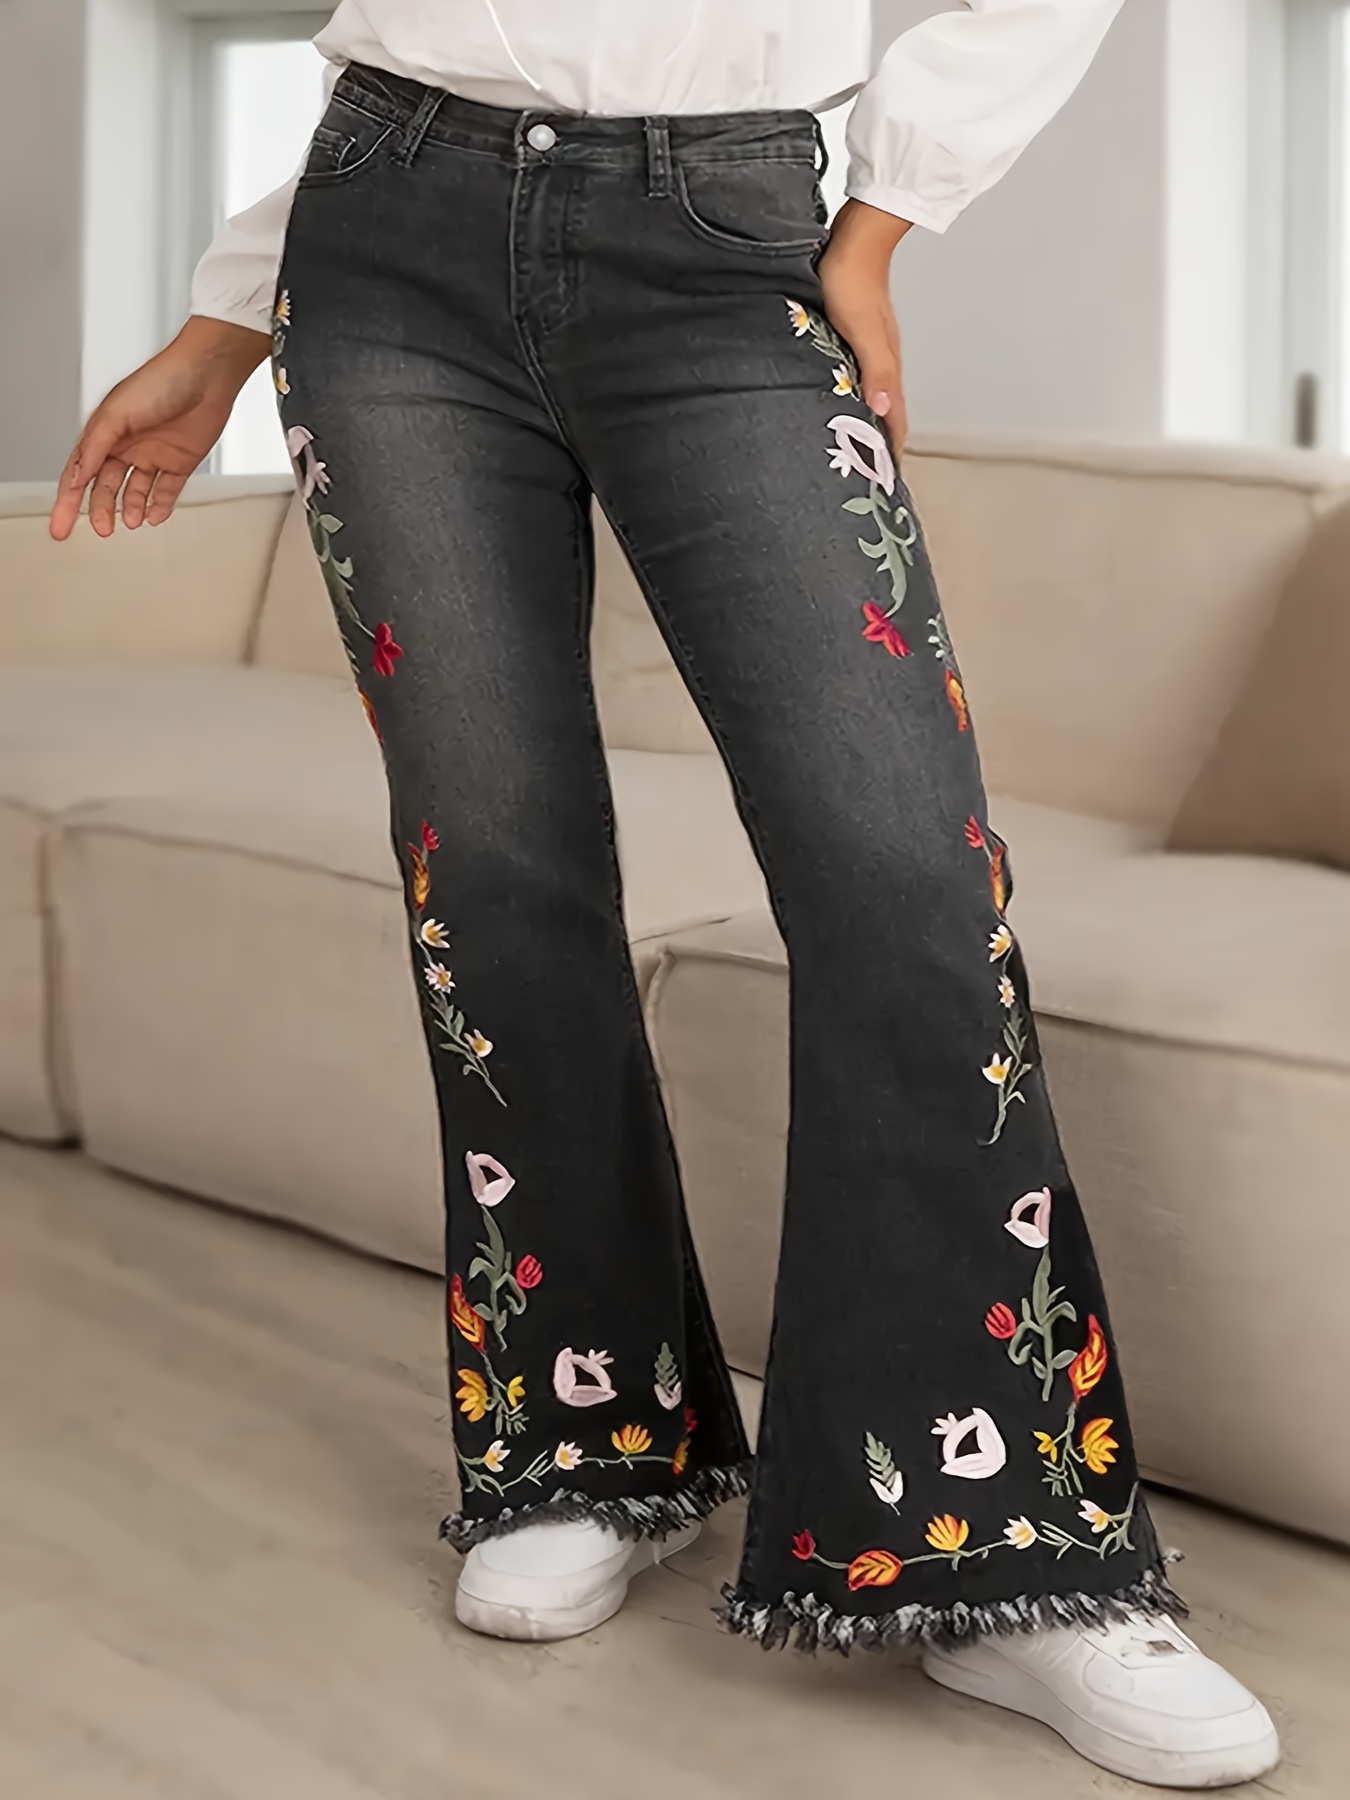 Jeans rectos de cintura alta con estampado floral, pantalones de mezclilla  sueltos de talle alto con bolsillos cortados, jeans y ropa de mezclilla par